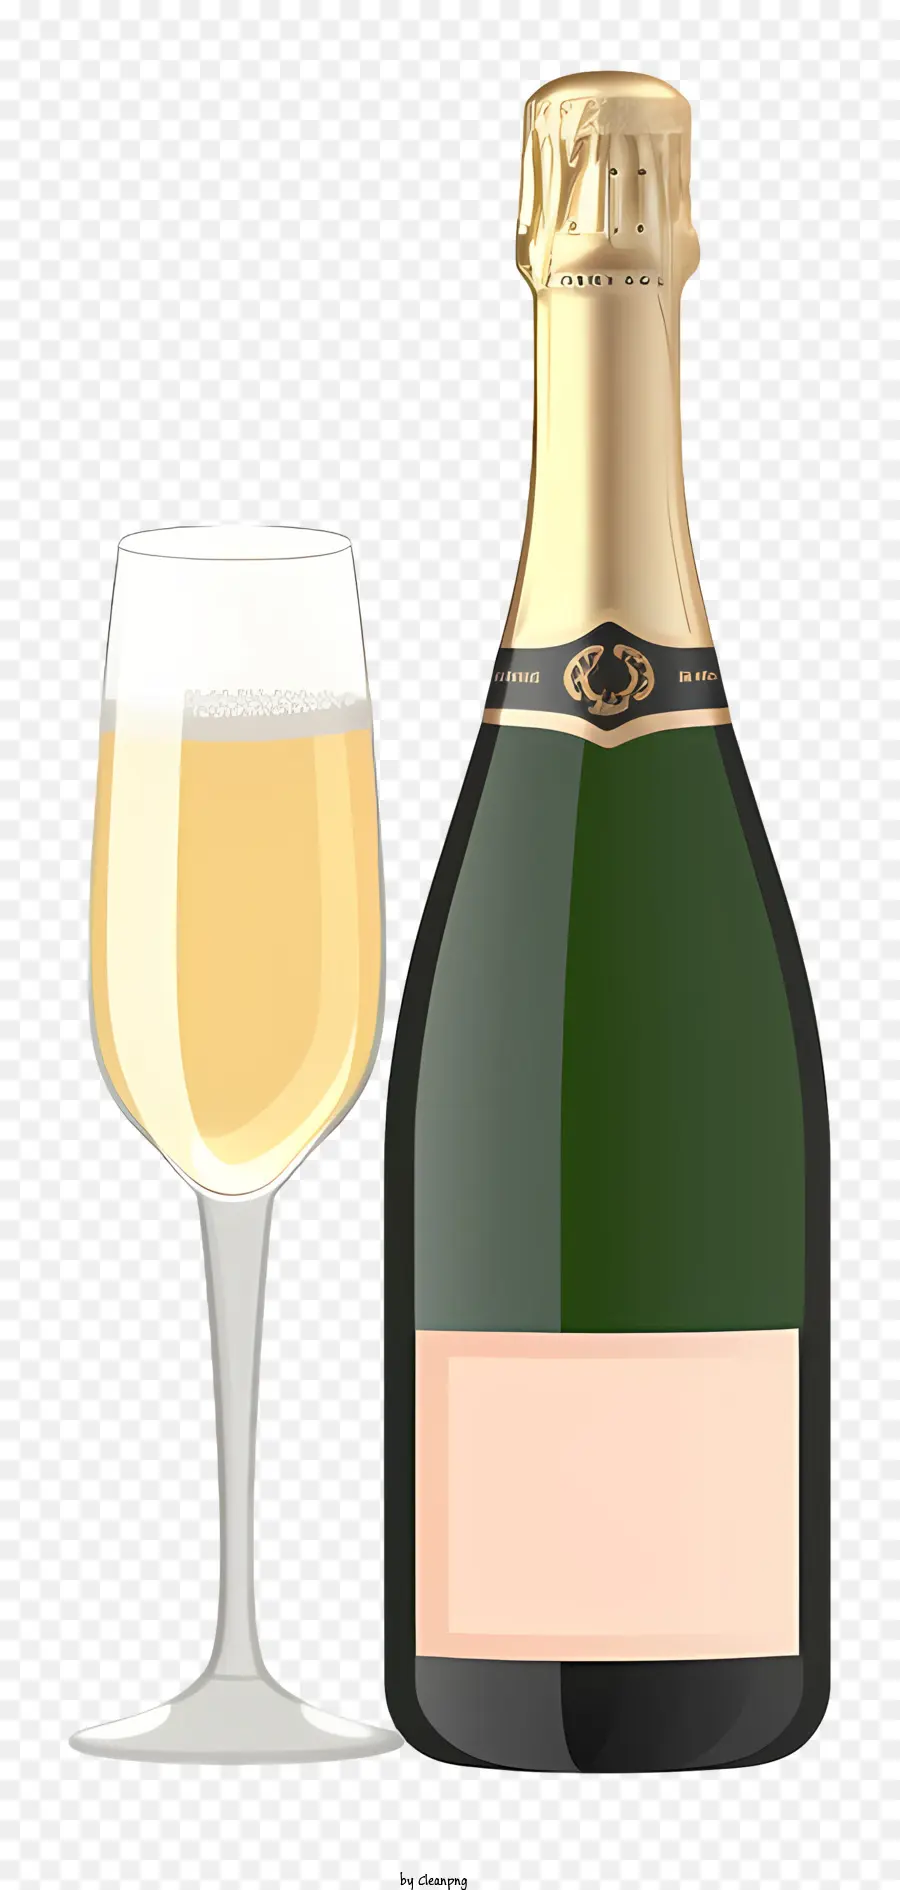 Weinglas - Champagnerflasche und Weinglas auf Schwarz